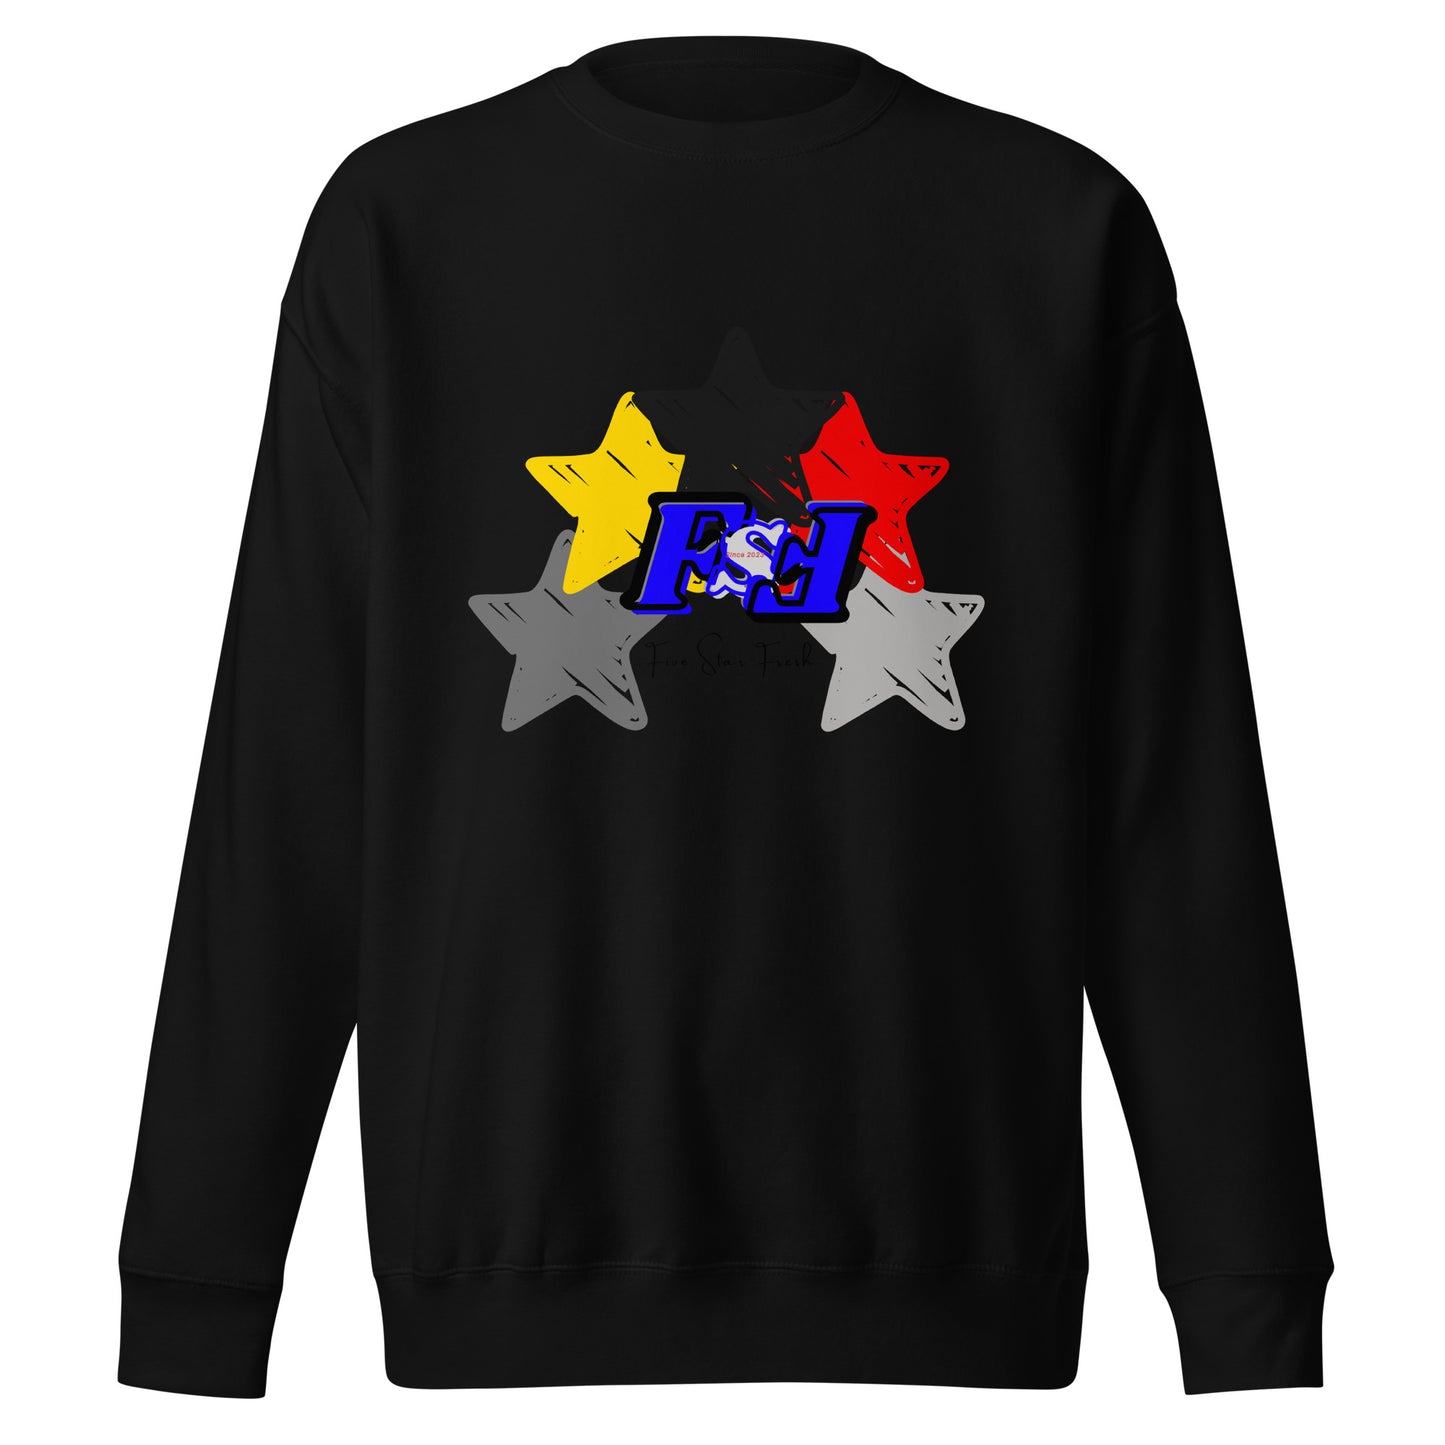 'Big Star' Dark - Five Star Fresh Unisex Premium Sweatshirt